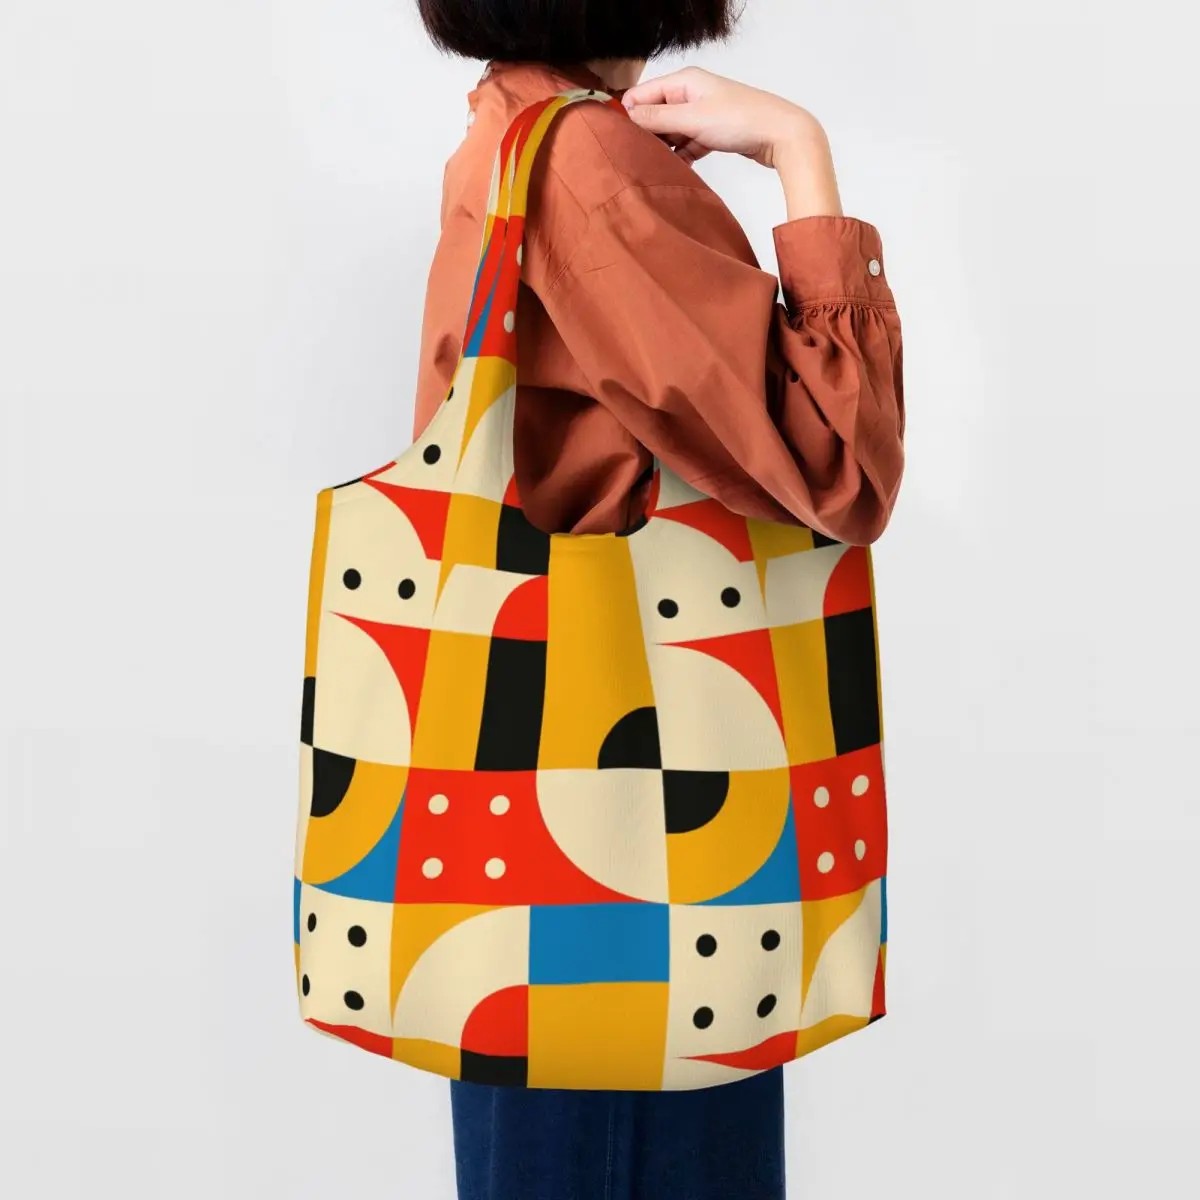 Геометрическая линия в цветном блоке Bauhaus, современная холщовая сумка для покупок, женская сумка для продуктов, которую можно стирать, Минималистичная сумка для покупок Изображение 0